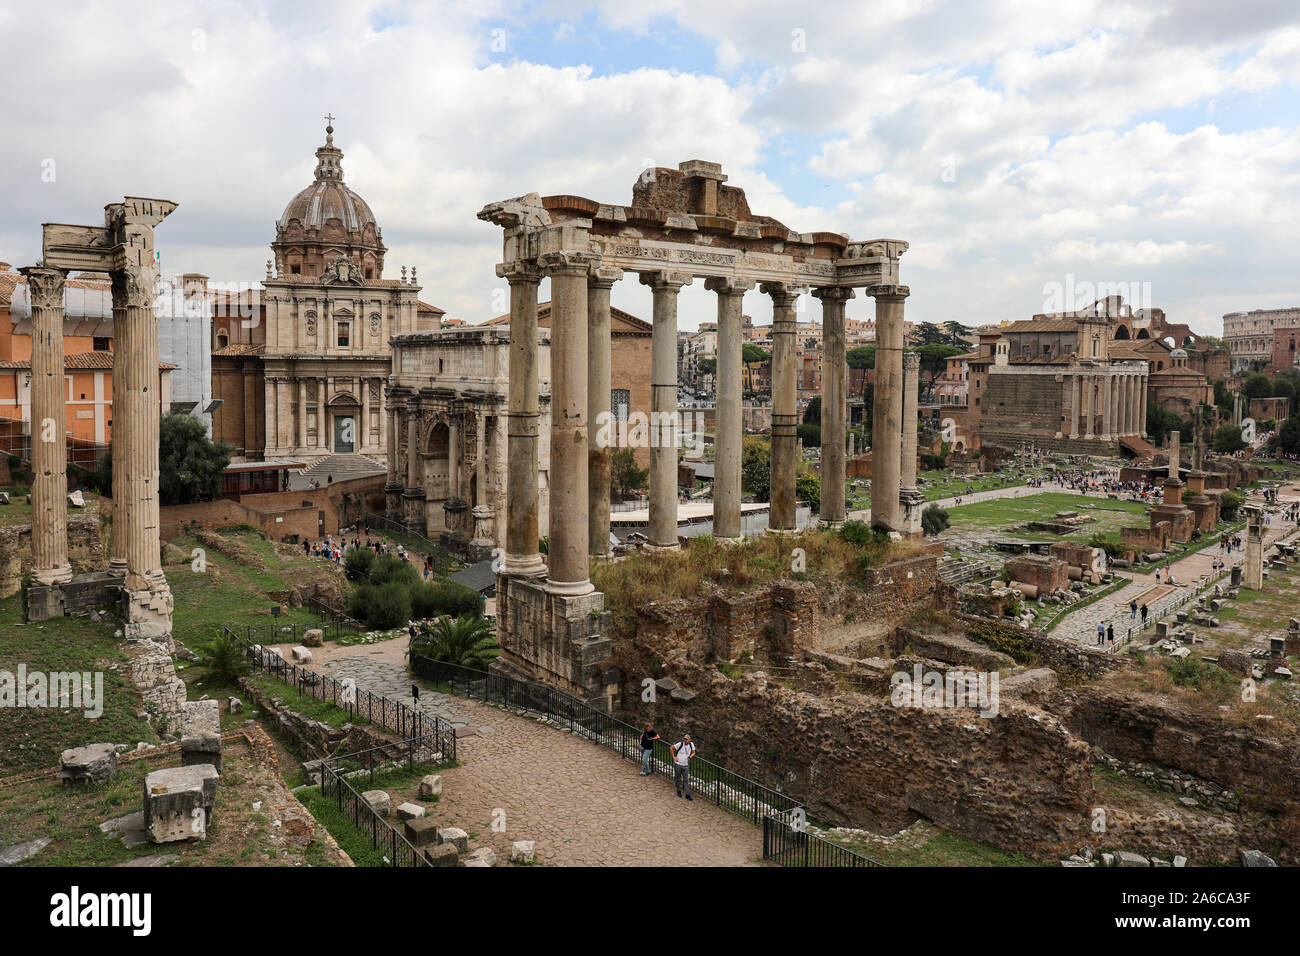 Tempio di Saturno e altre antiche rovine romane nel Forum Romanum, Roma, Italia Foto Stock